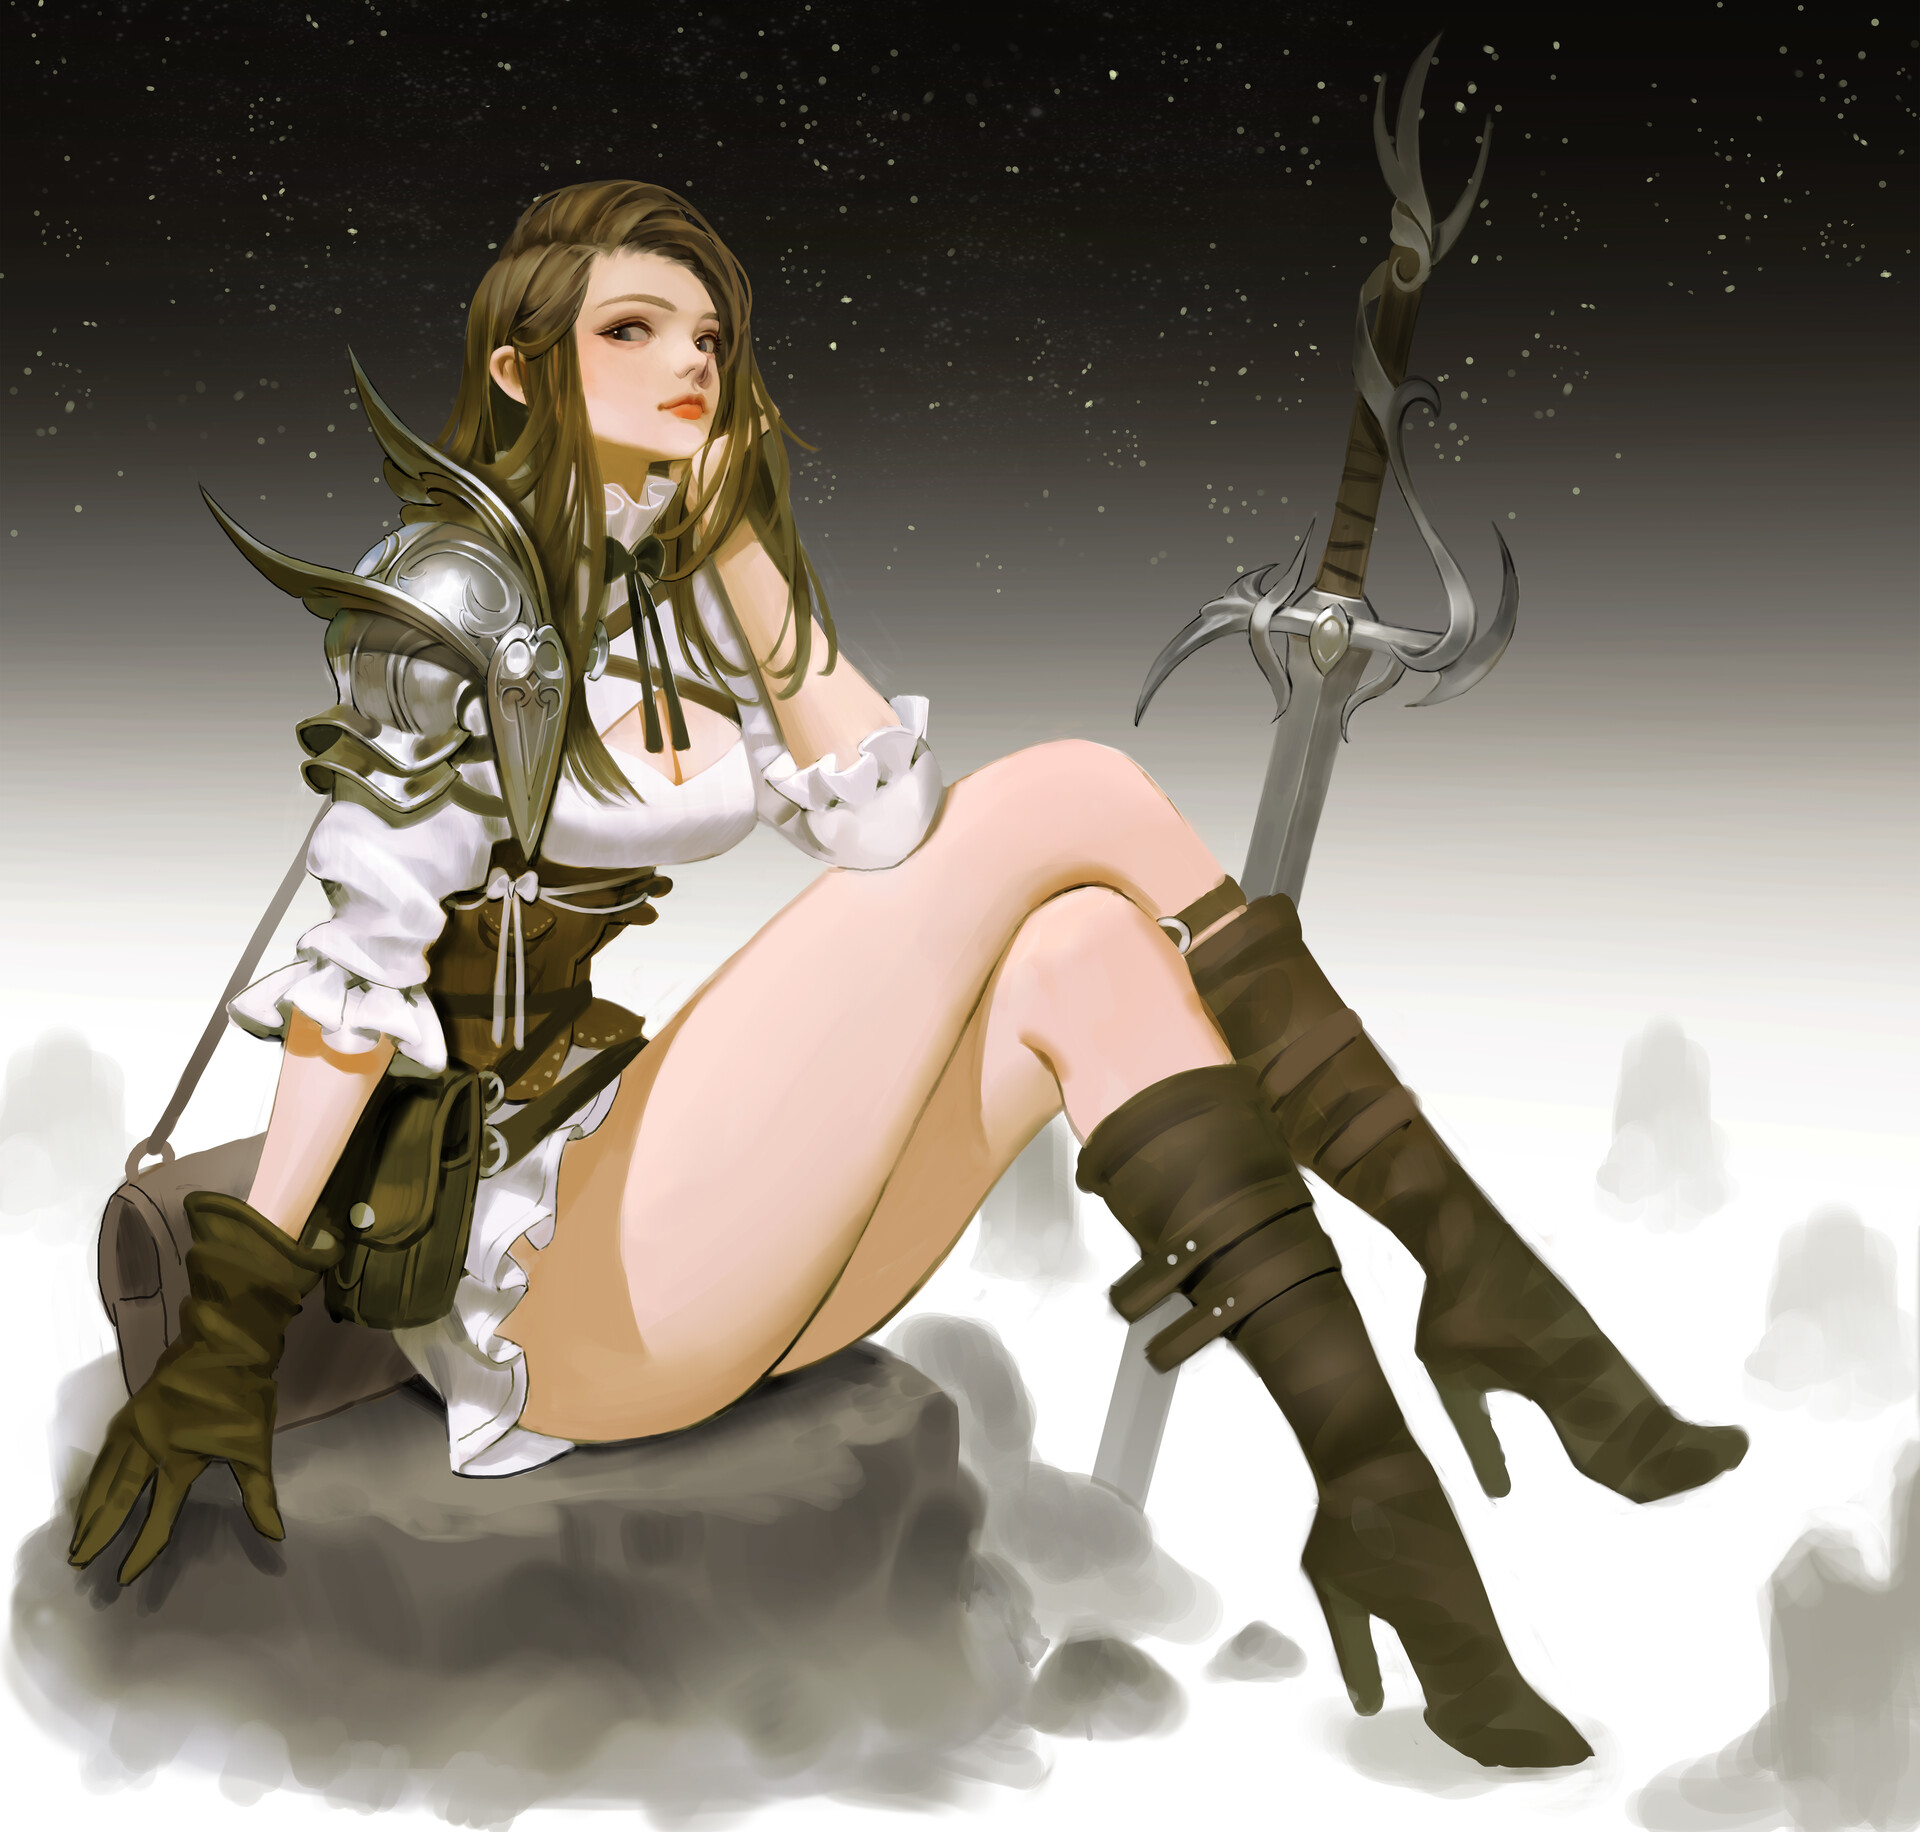 Women Artwork Fantasy Art Fantasy Girl Legs High Heeled Boots Sitting Brunette Long Hair Sword Weapo 1920x1832